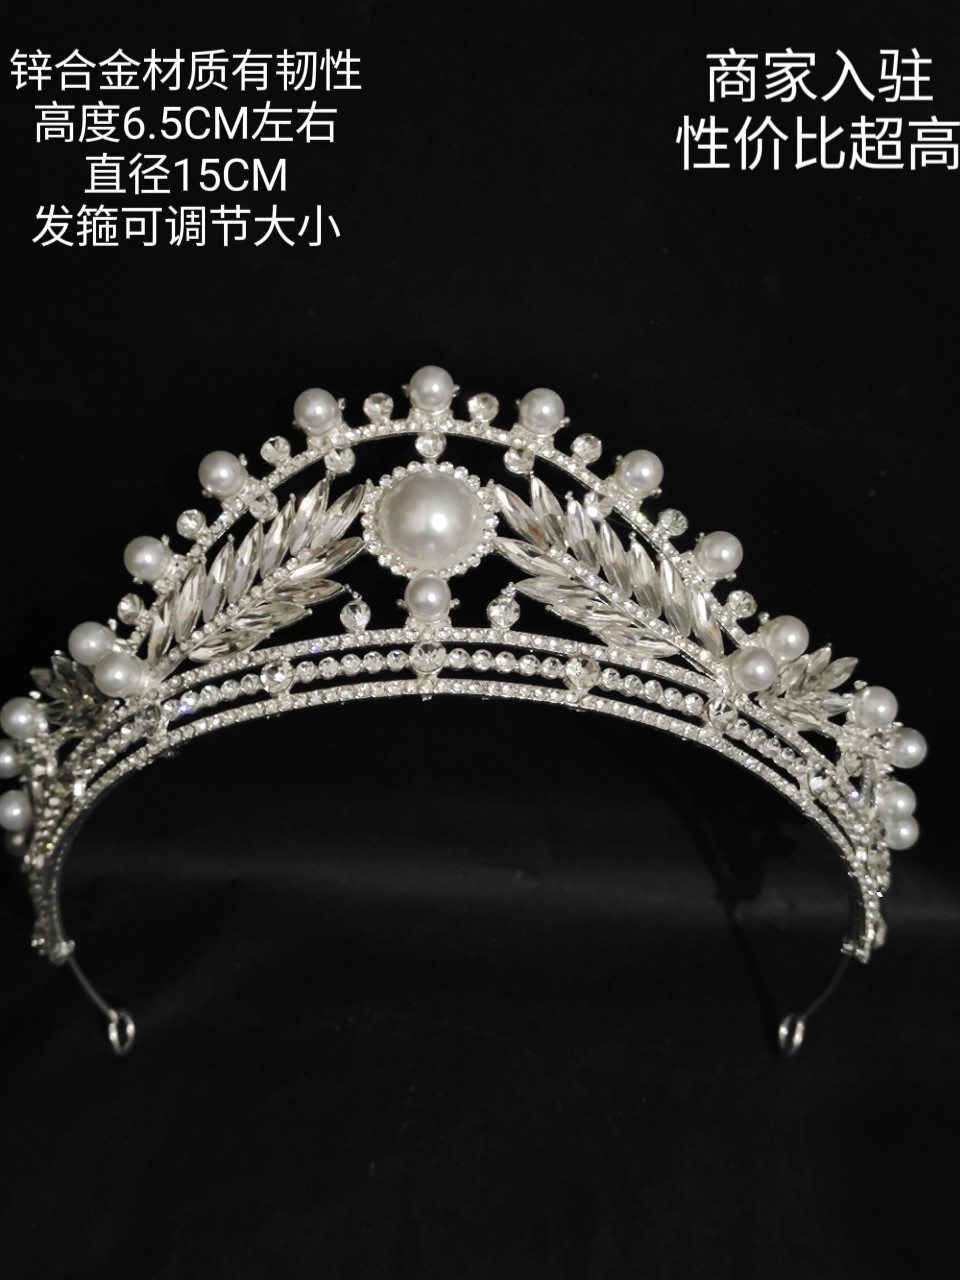 饰品新娘皇冠头饰珍珠造型头饰水晶发箍婚纱配饰高级感满合金材质